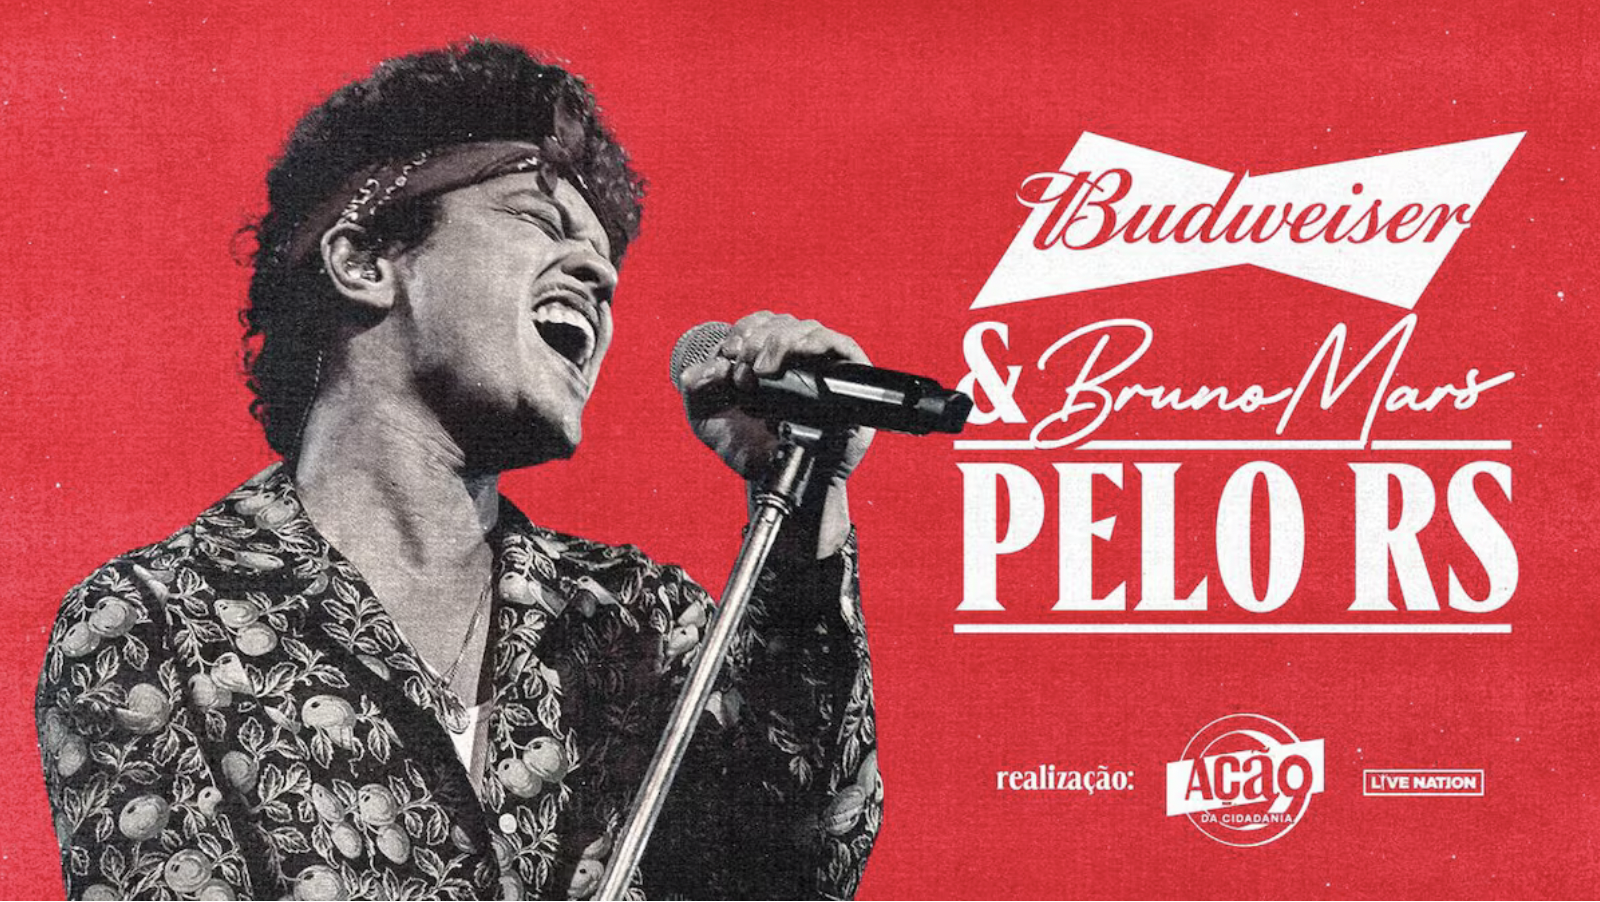 Budweiser e Ação da Cidadania promovem show beneficente do cantor Bruno Mars exclusivo para doadores